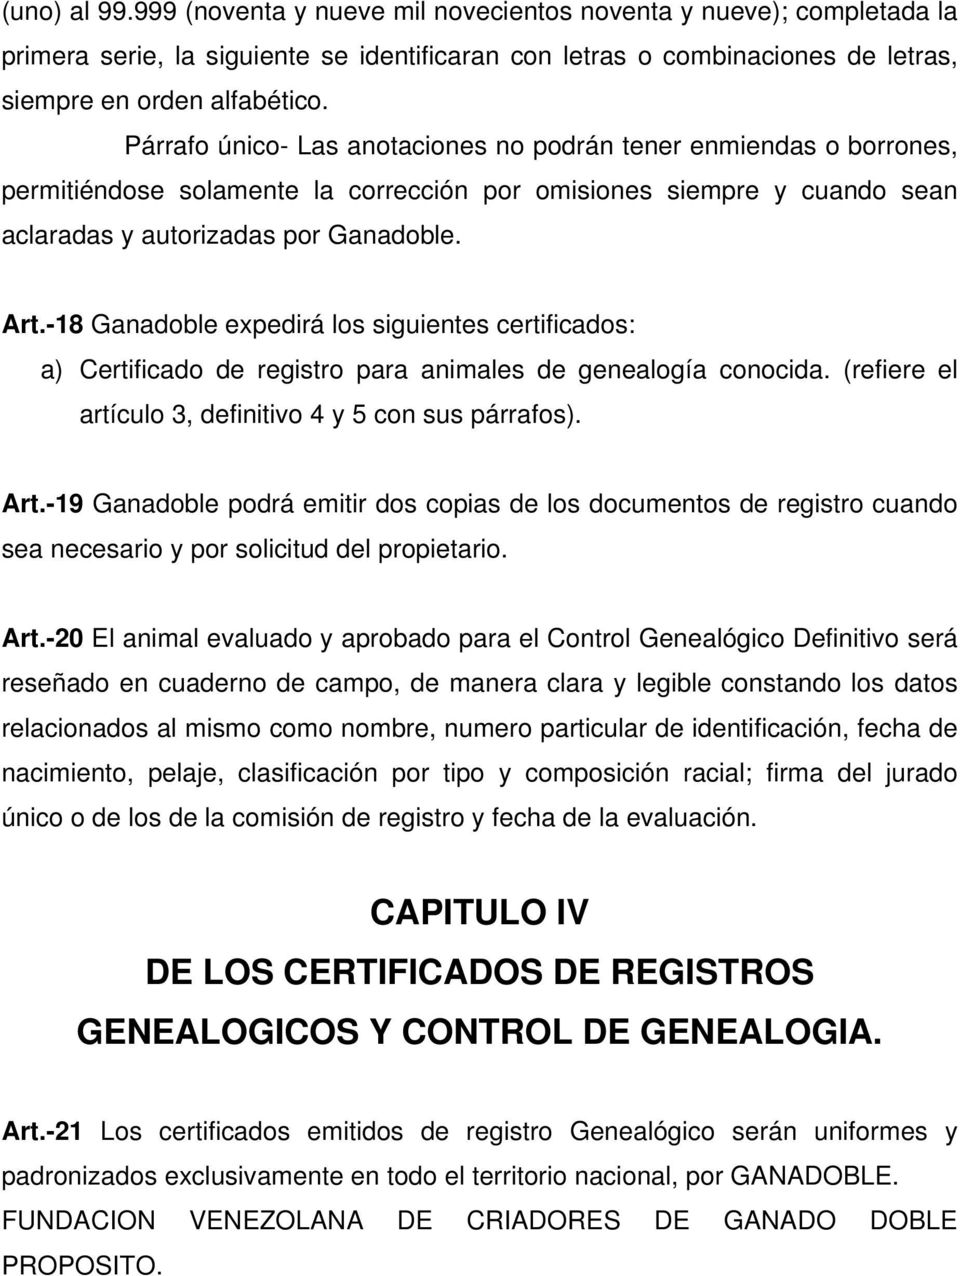 -18 Ganadoble expedirá los siguientes certificados: a) Certificado de registro para animales de genealogía conocida. (refiere el artículo 3, definitivo 4 y 5 con sus párrafos). Art.